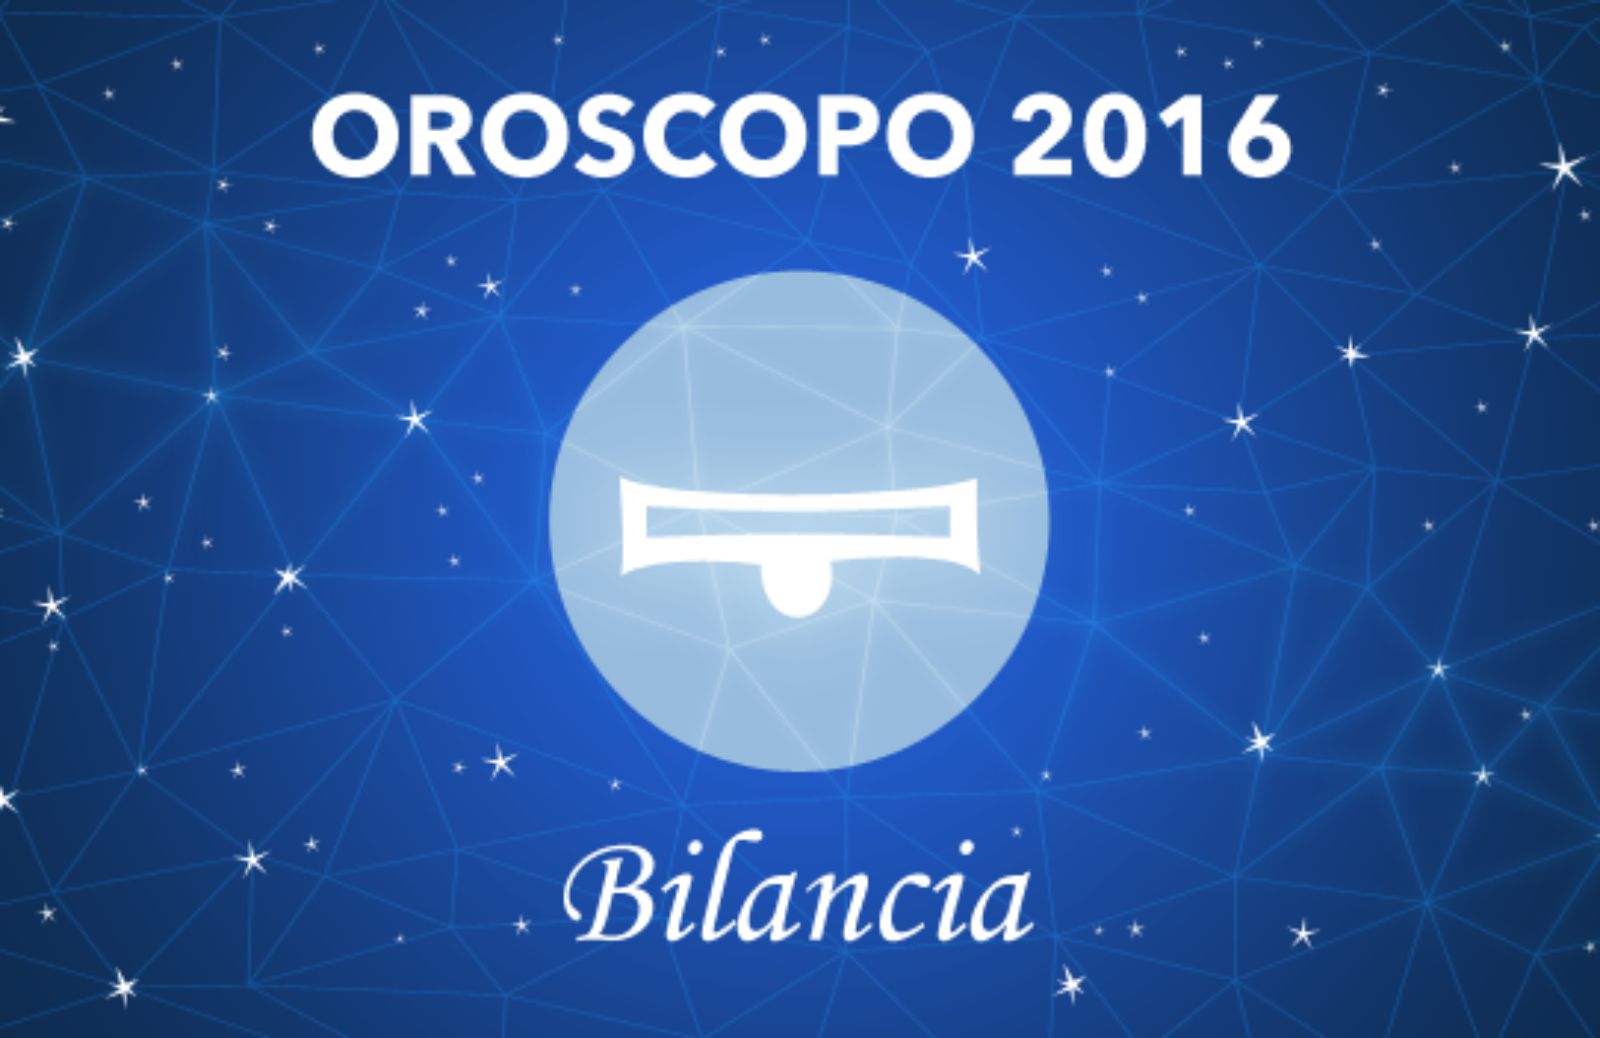 Oroscopo 2016 - Bilancia